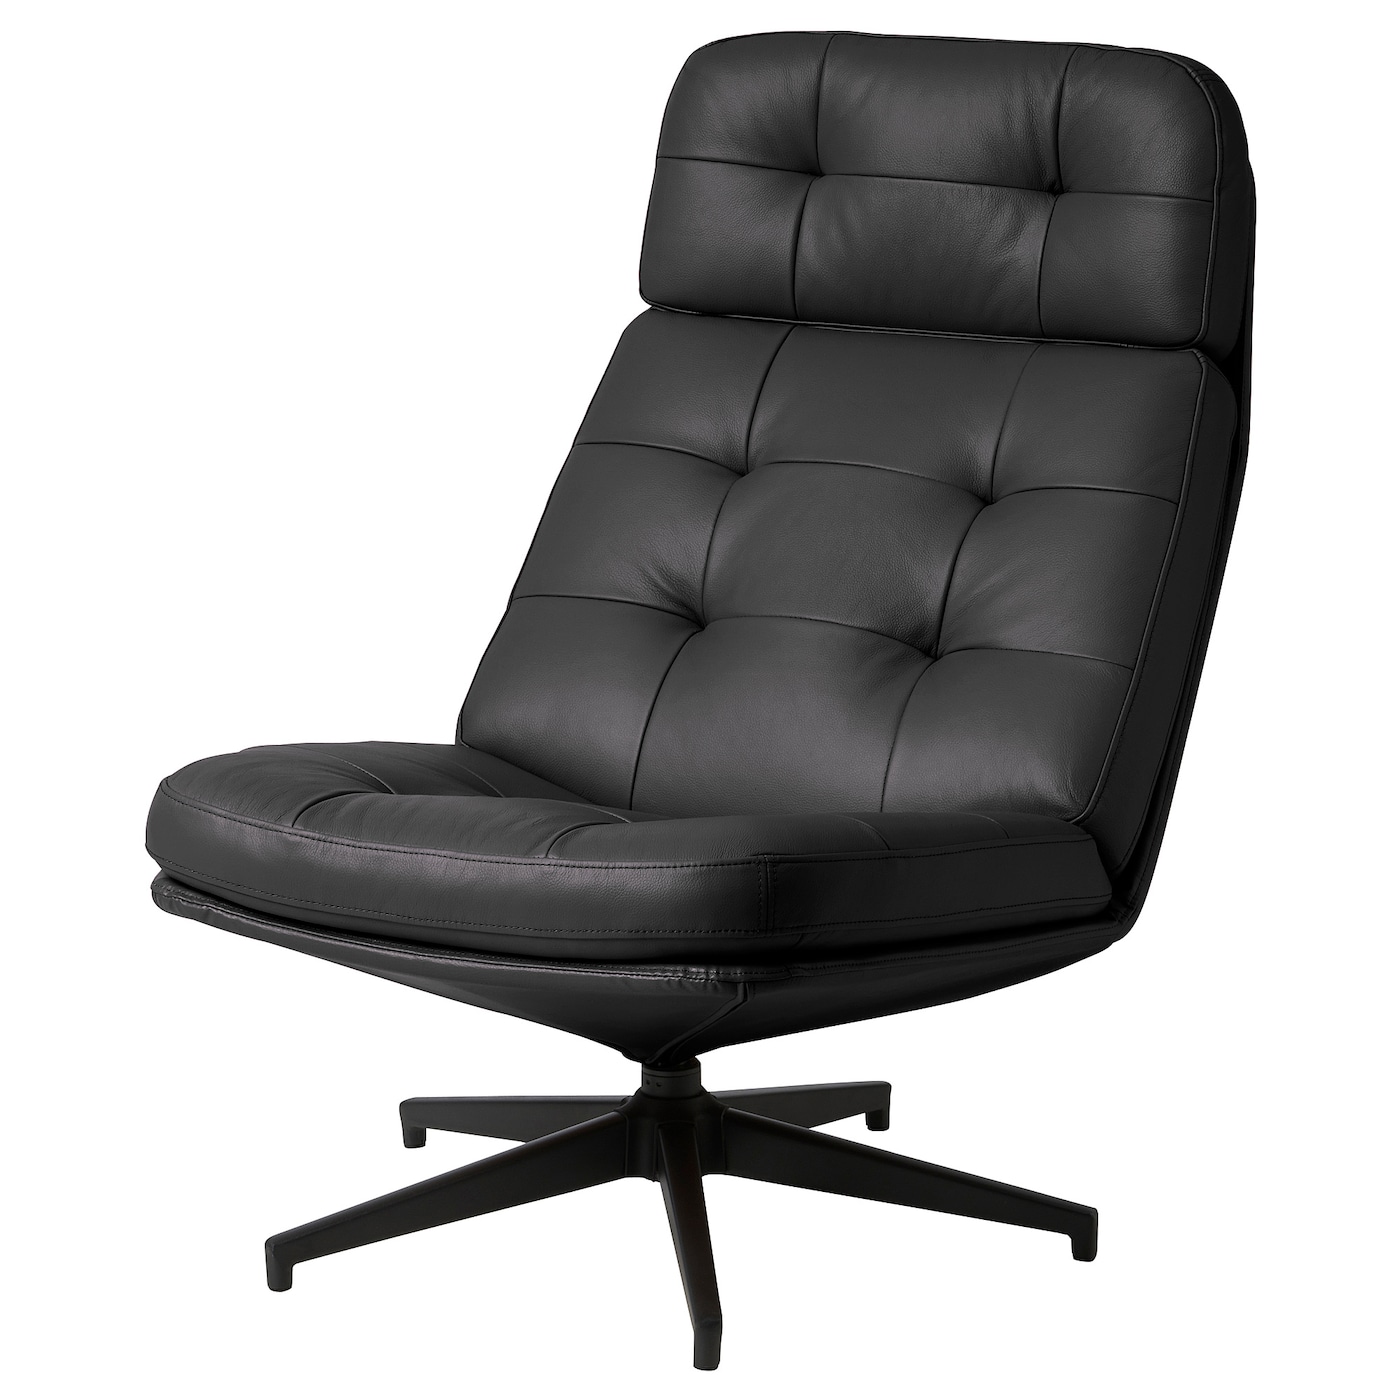 ХАВБЕРГ Вращающееся кресло, Гранн/Бомстад черный HAVBERG IKEA домашнее кресло ihome компьютерное кресло эргономичное кресло офисное кресло вращающееся кресло электрическое кресло руководителя кресл